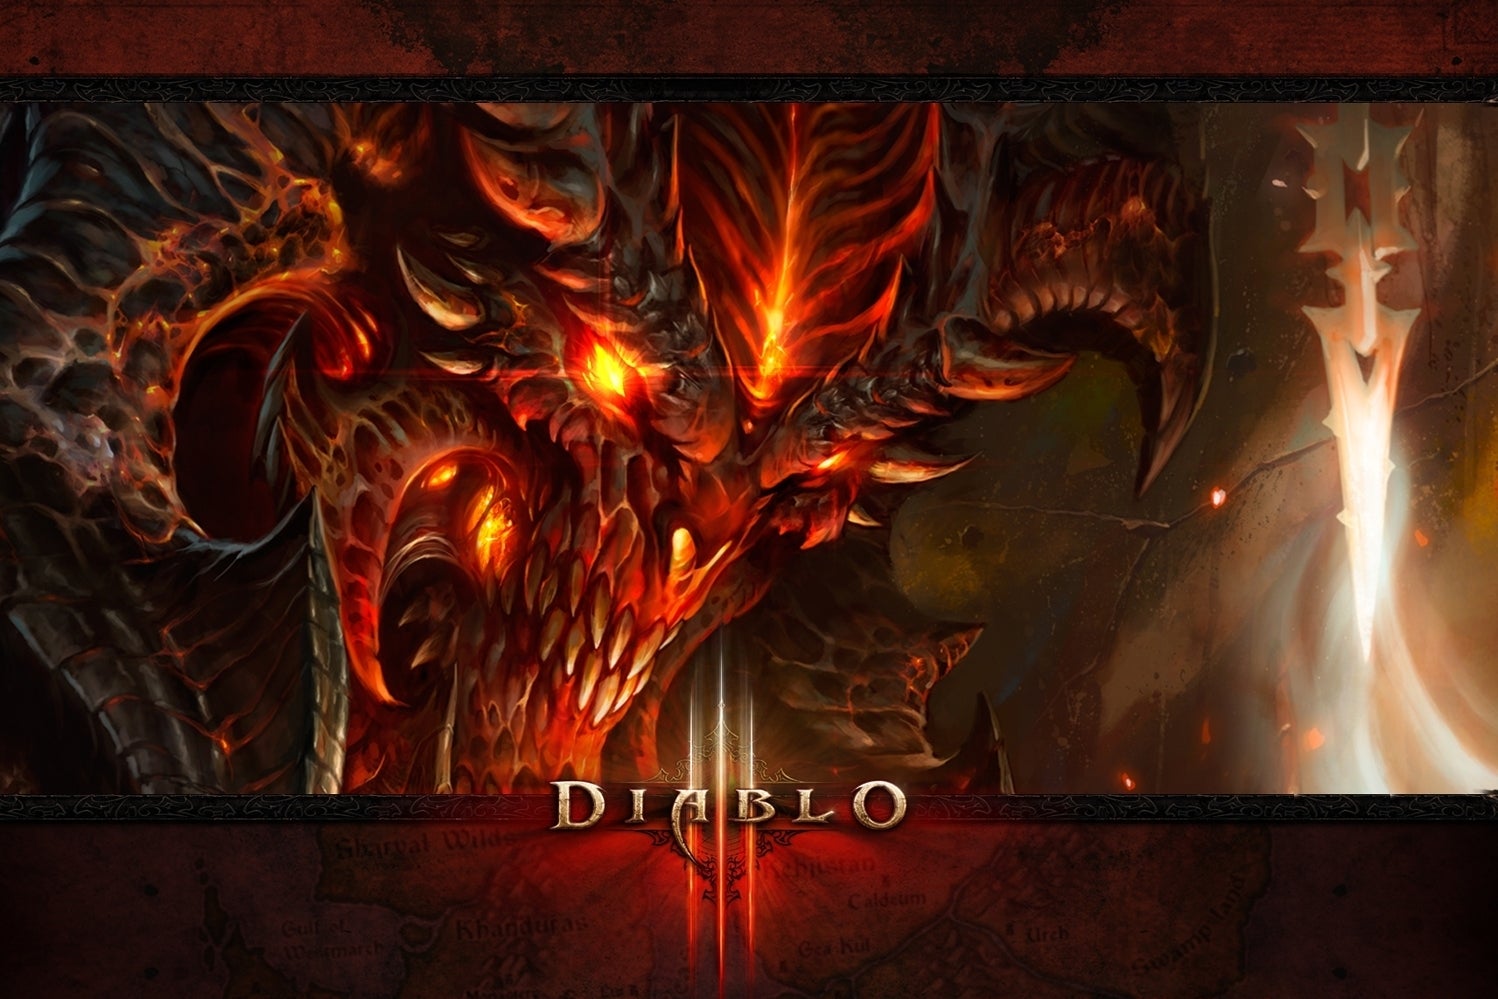 Imagem para Pre-venda do Diablo III já está disponível para a PS3